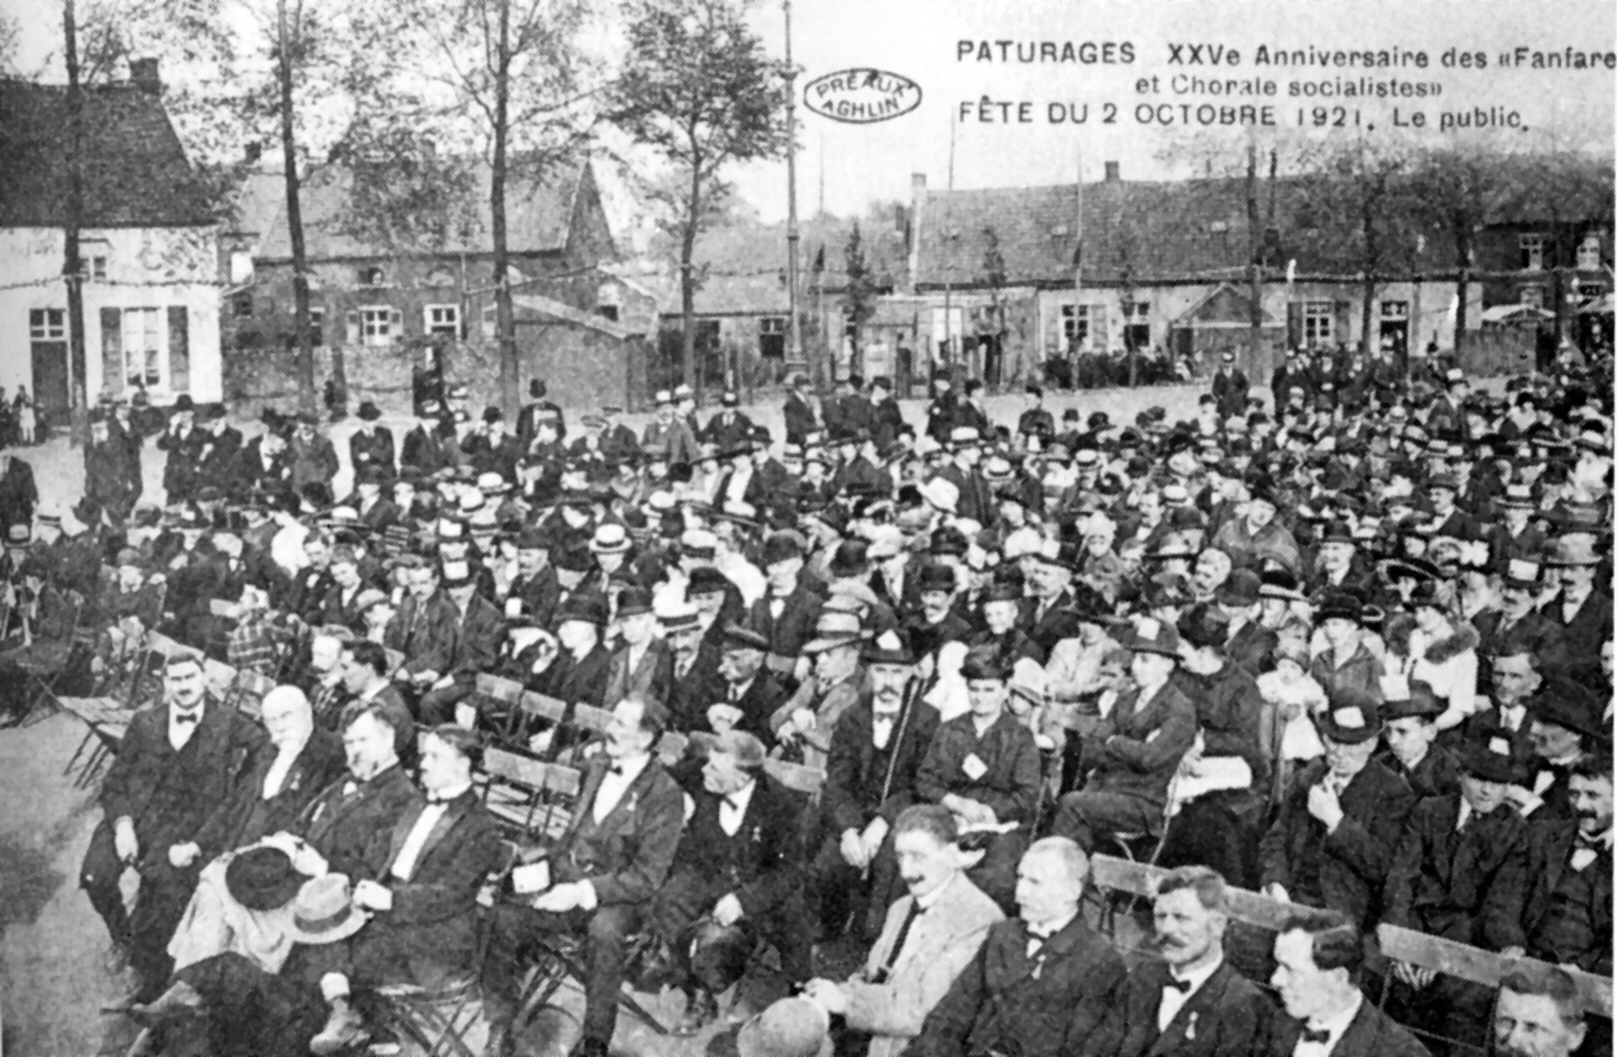 Pturages : Anniversaire des fanfare et chorale socialistes - Le public (2 octobre 1921).